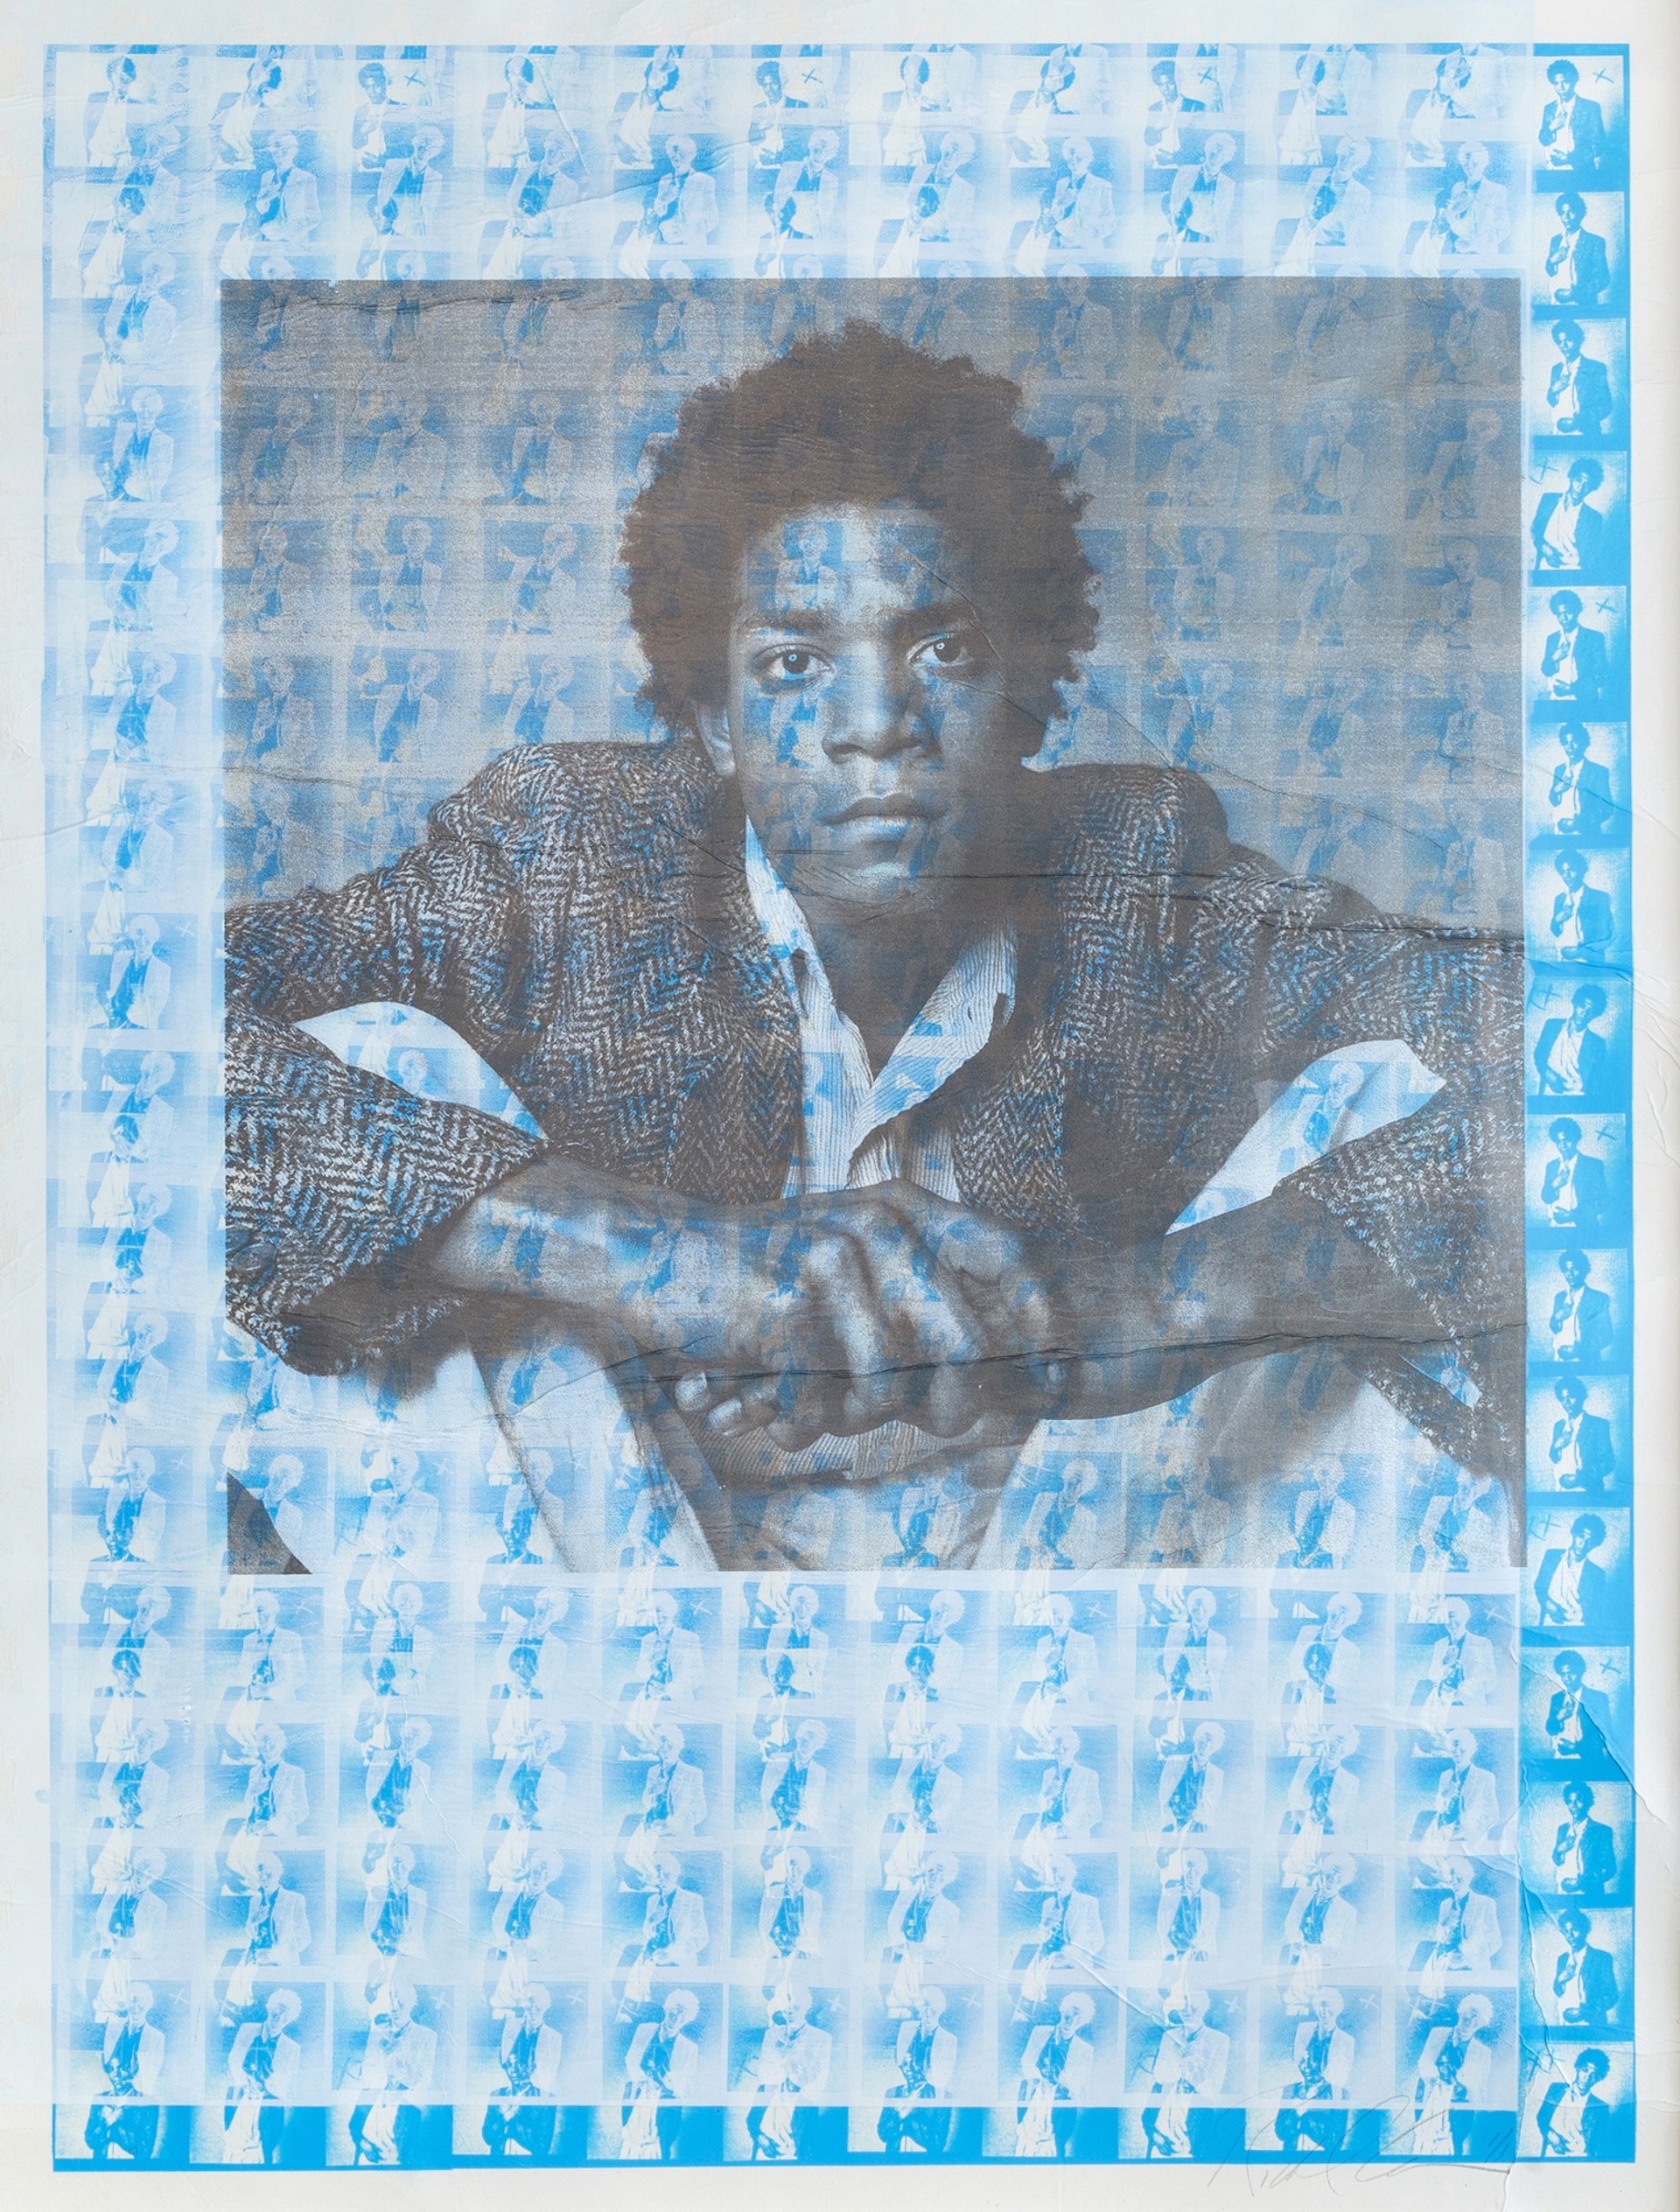 Jean-Michel Basquiat, 1984 by Richard Corman